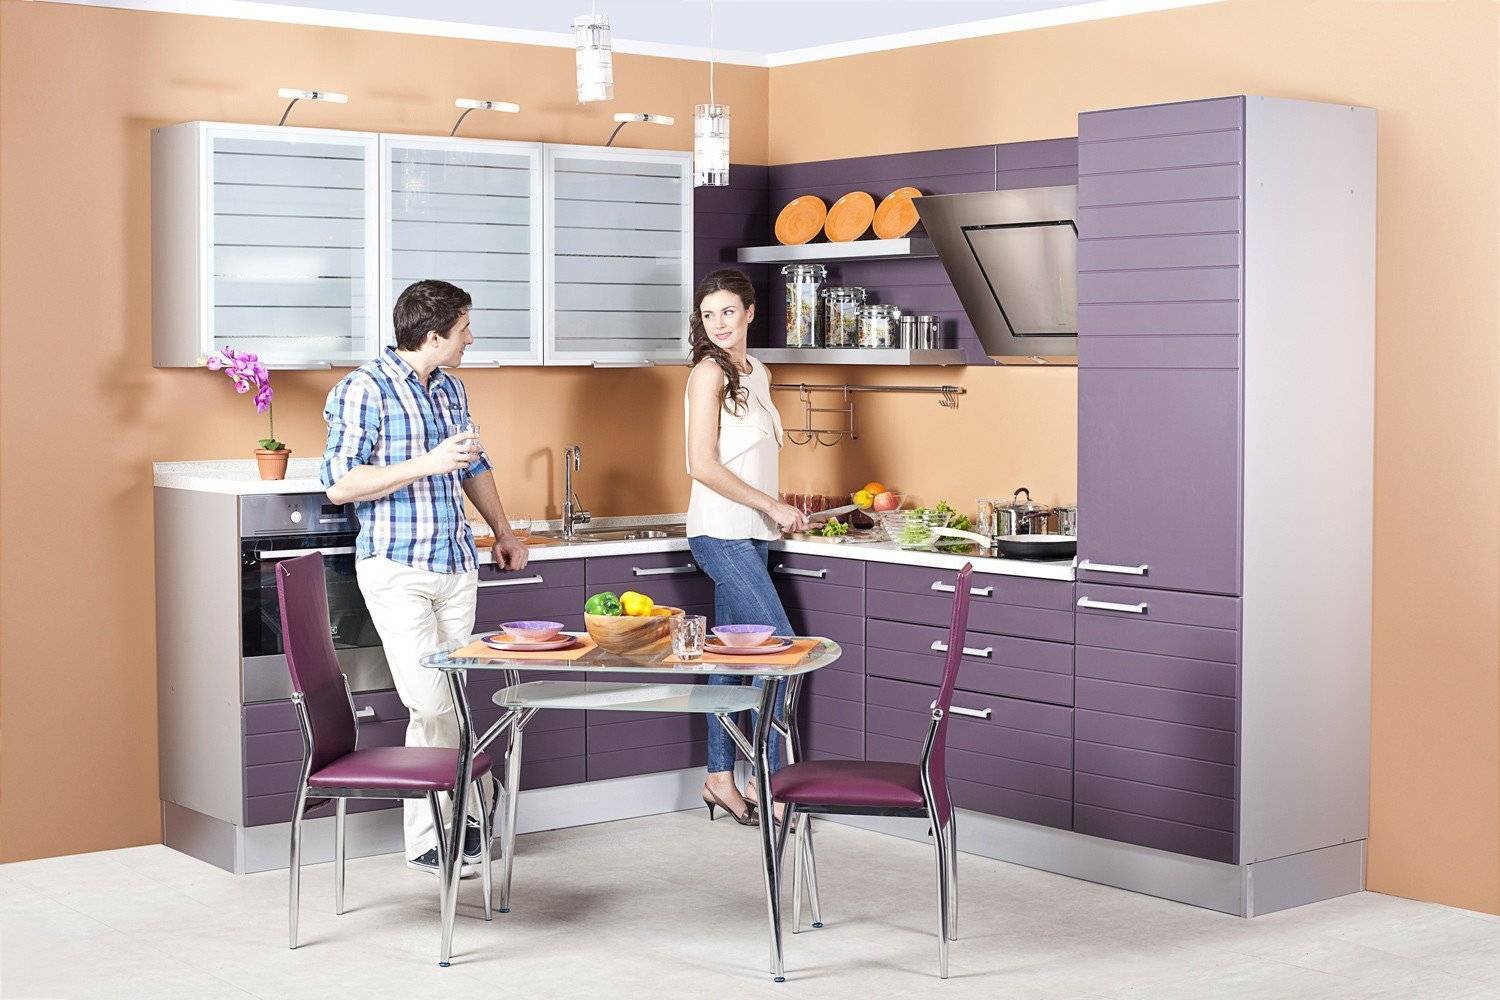 Кухня в современном стиле: как красиво оформить интерьер квартиры или дома, идеи готового дизайна, материалы, как подобрать гарнитур, выбор декора, фото решений